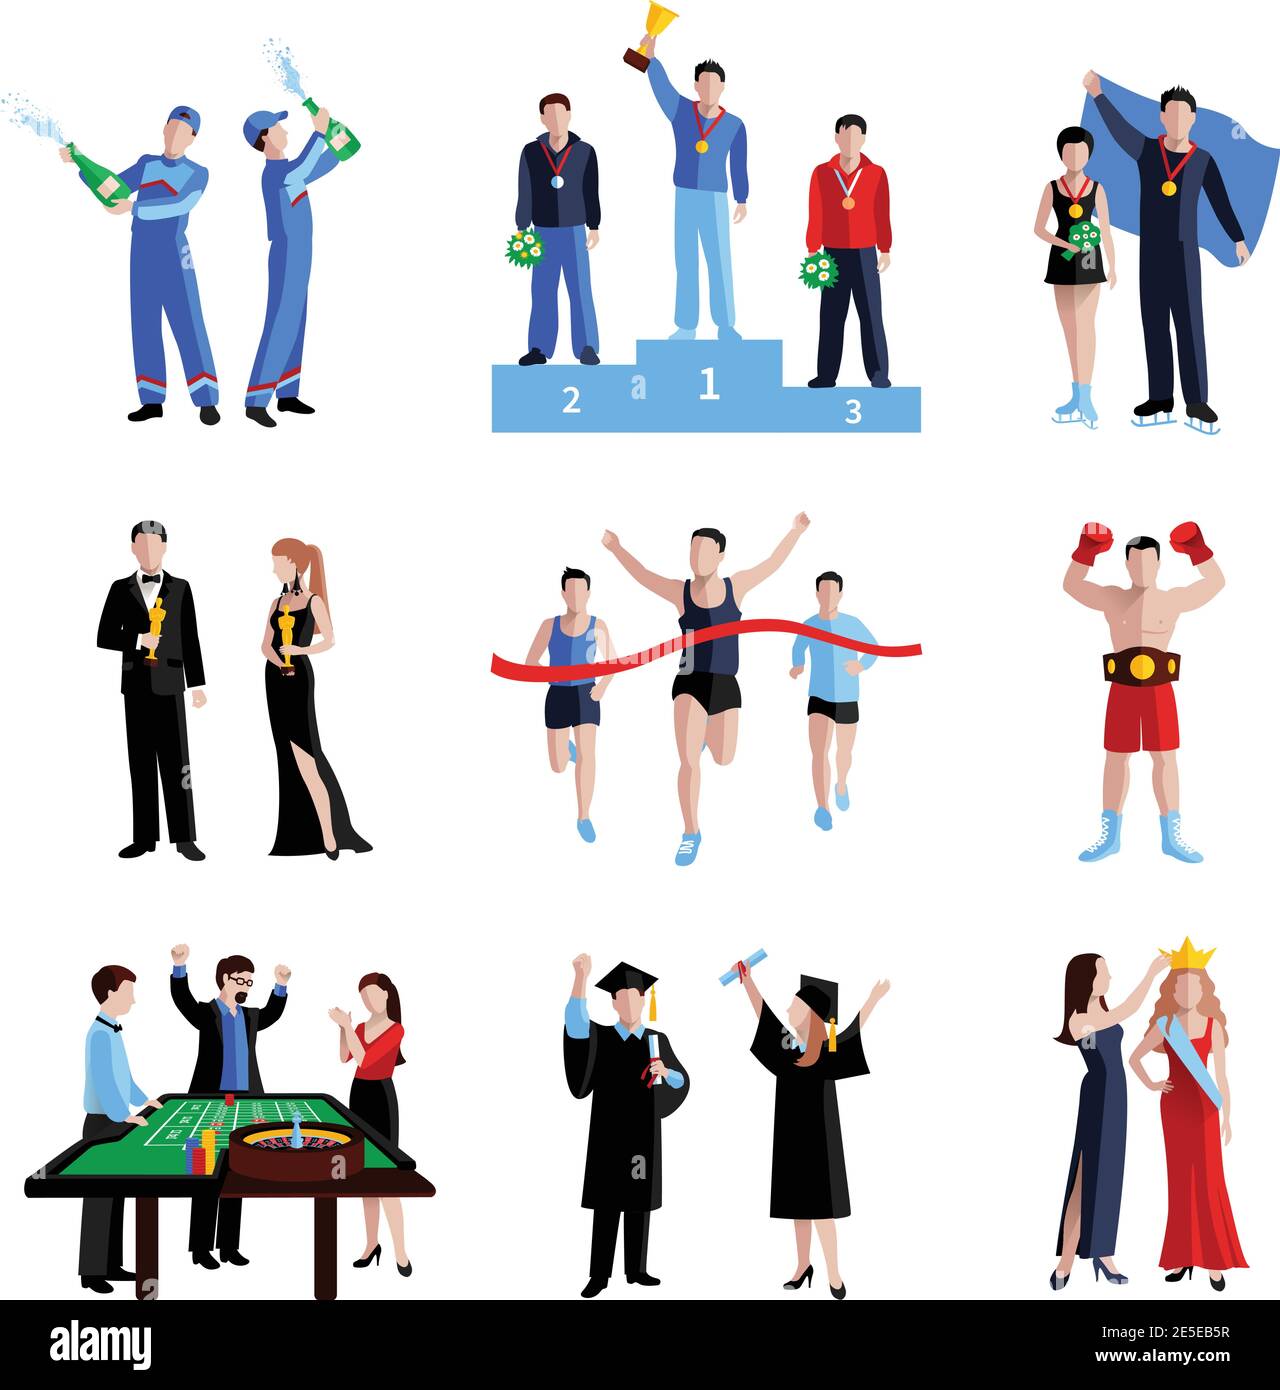 Les icônes des gagnants se sont présentées dans un jeu d'éducation sportive et d'arts isolés illustration vectorielle Illustration de Vecteur